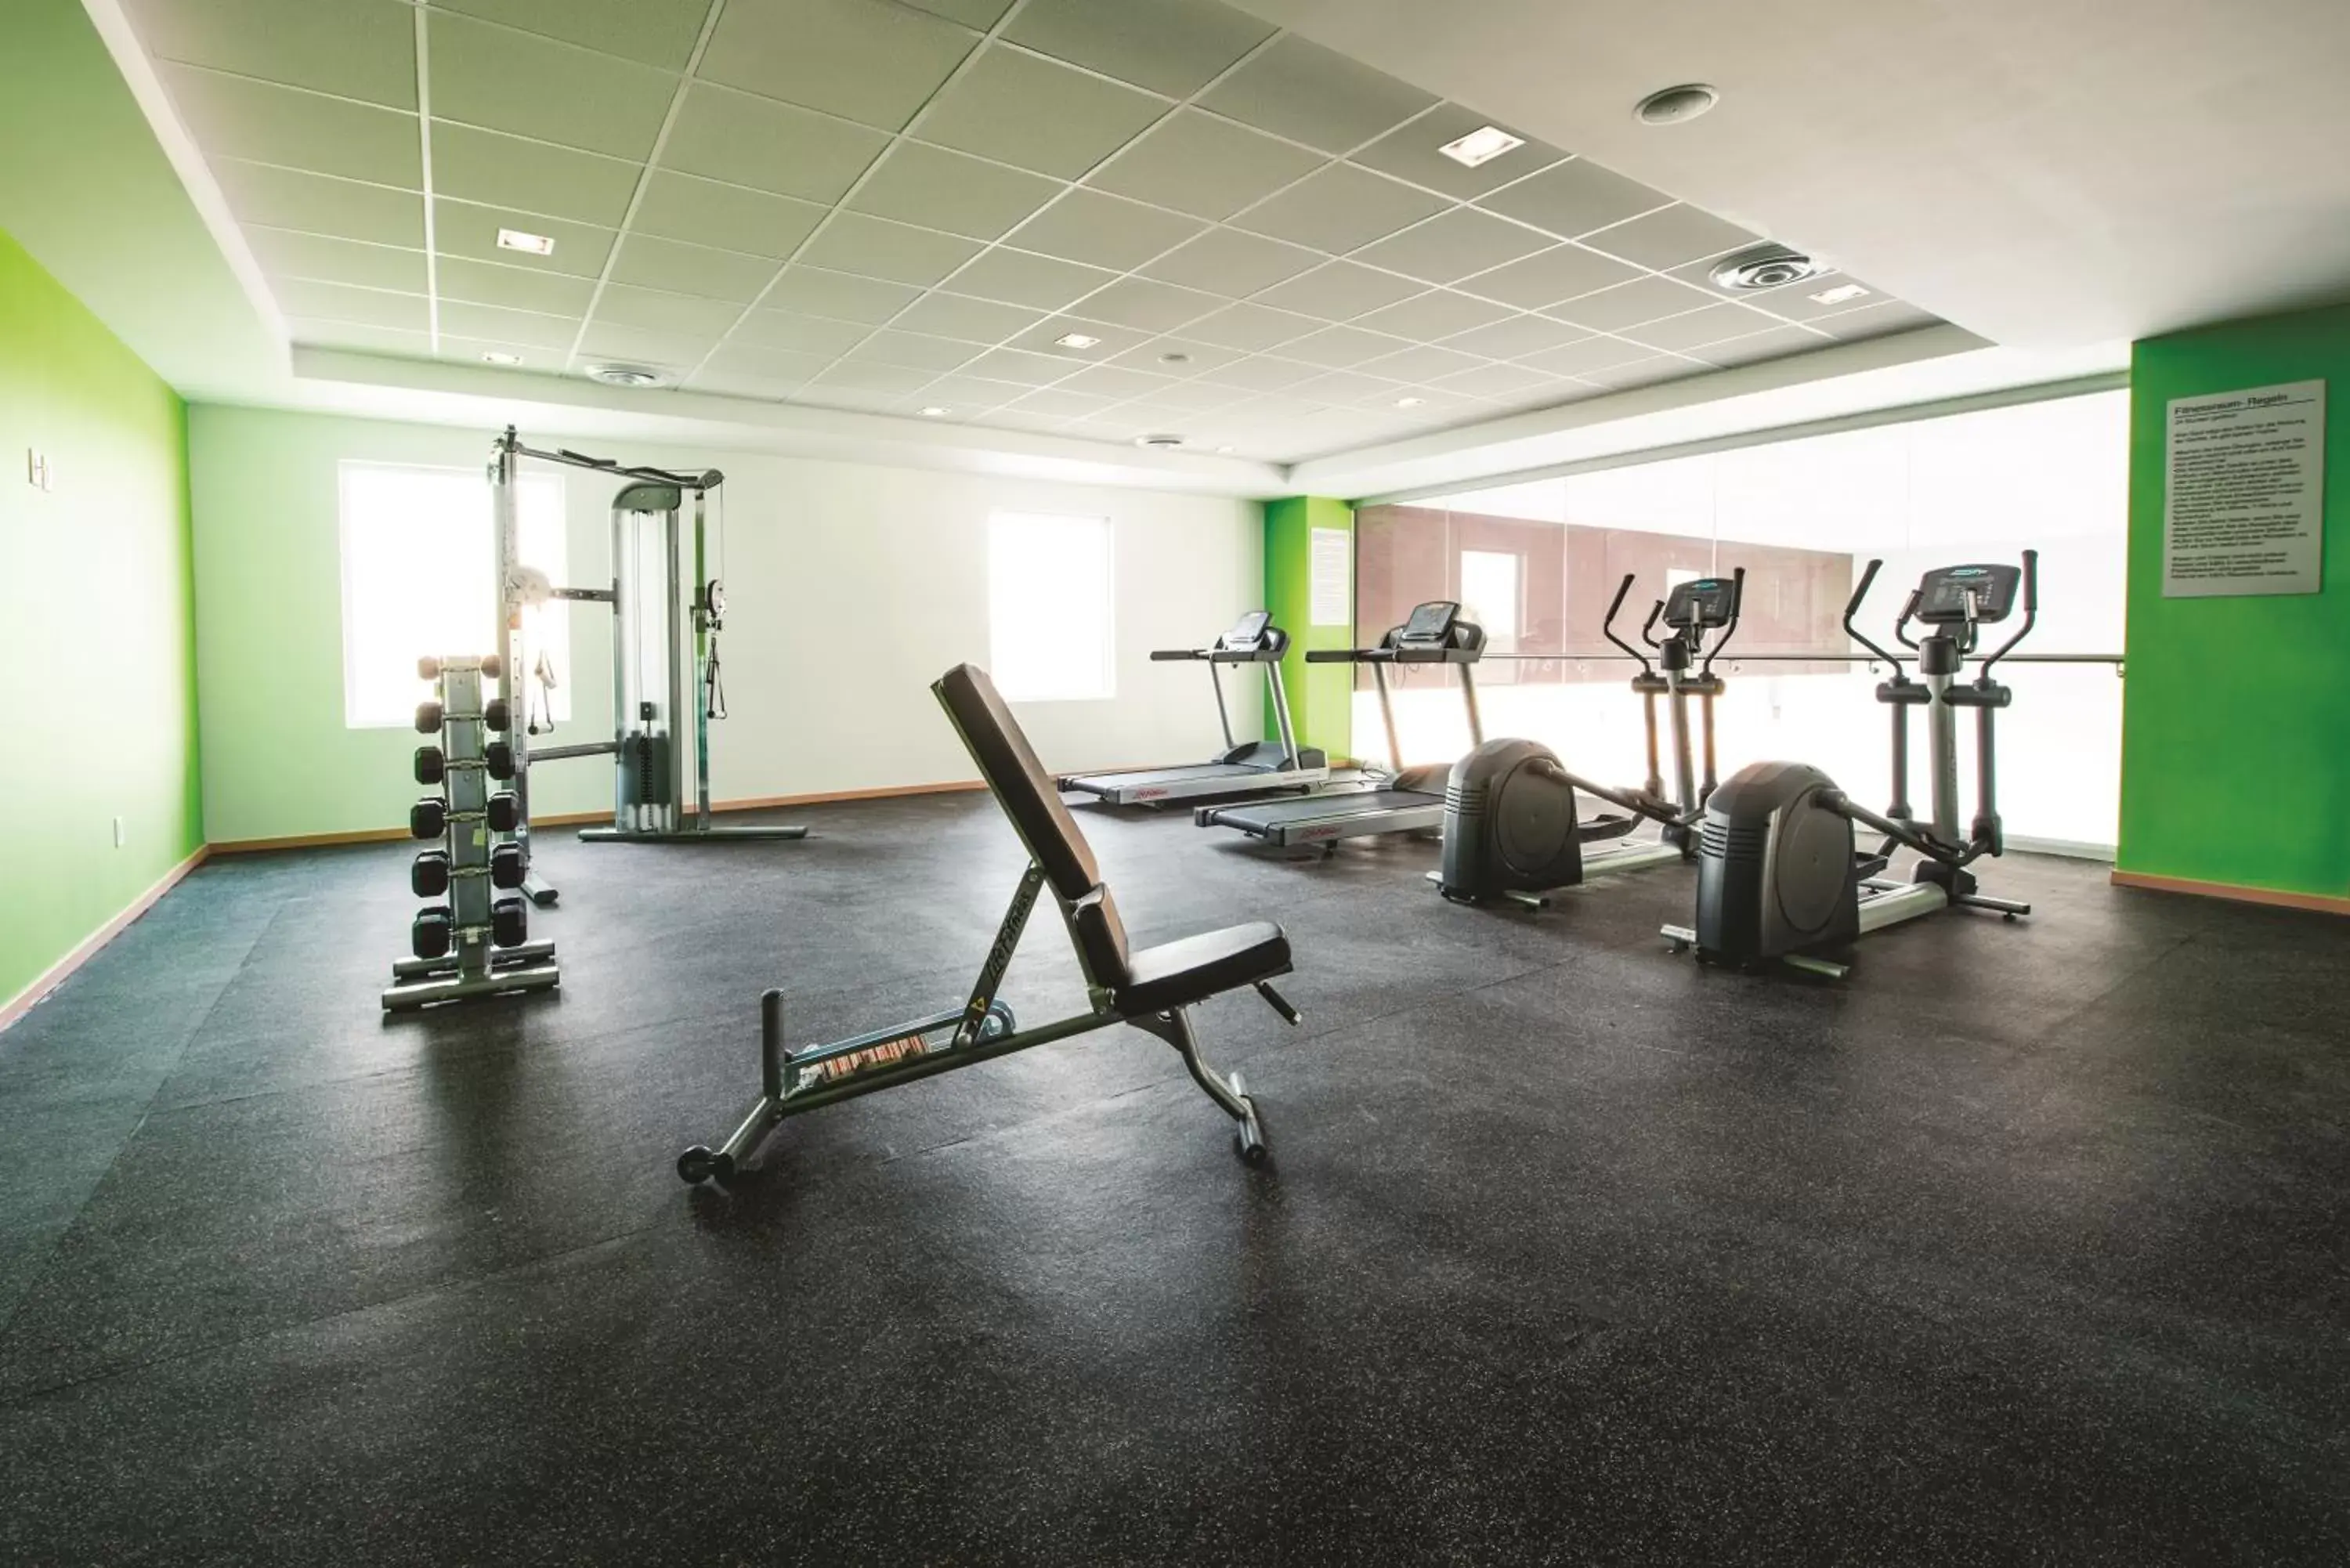 Fitness centre/facilities, Fitness Center/Facilities in La Quinta by Wyndham San Jose Chiapa Puebla